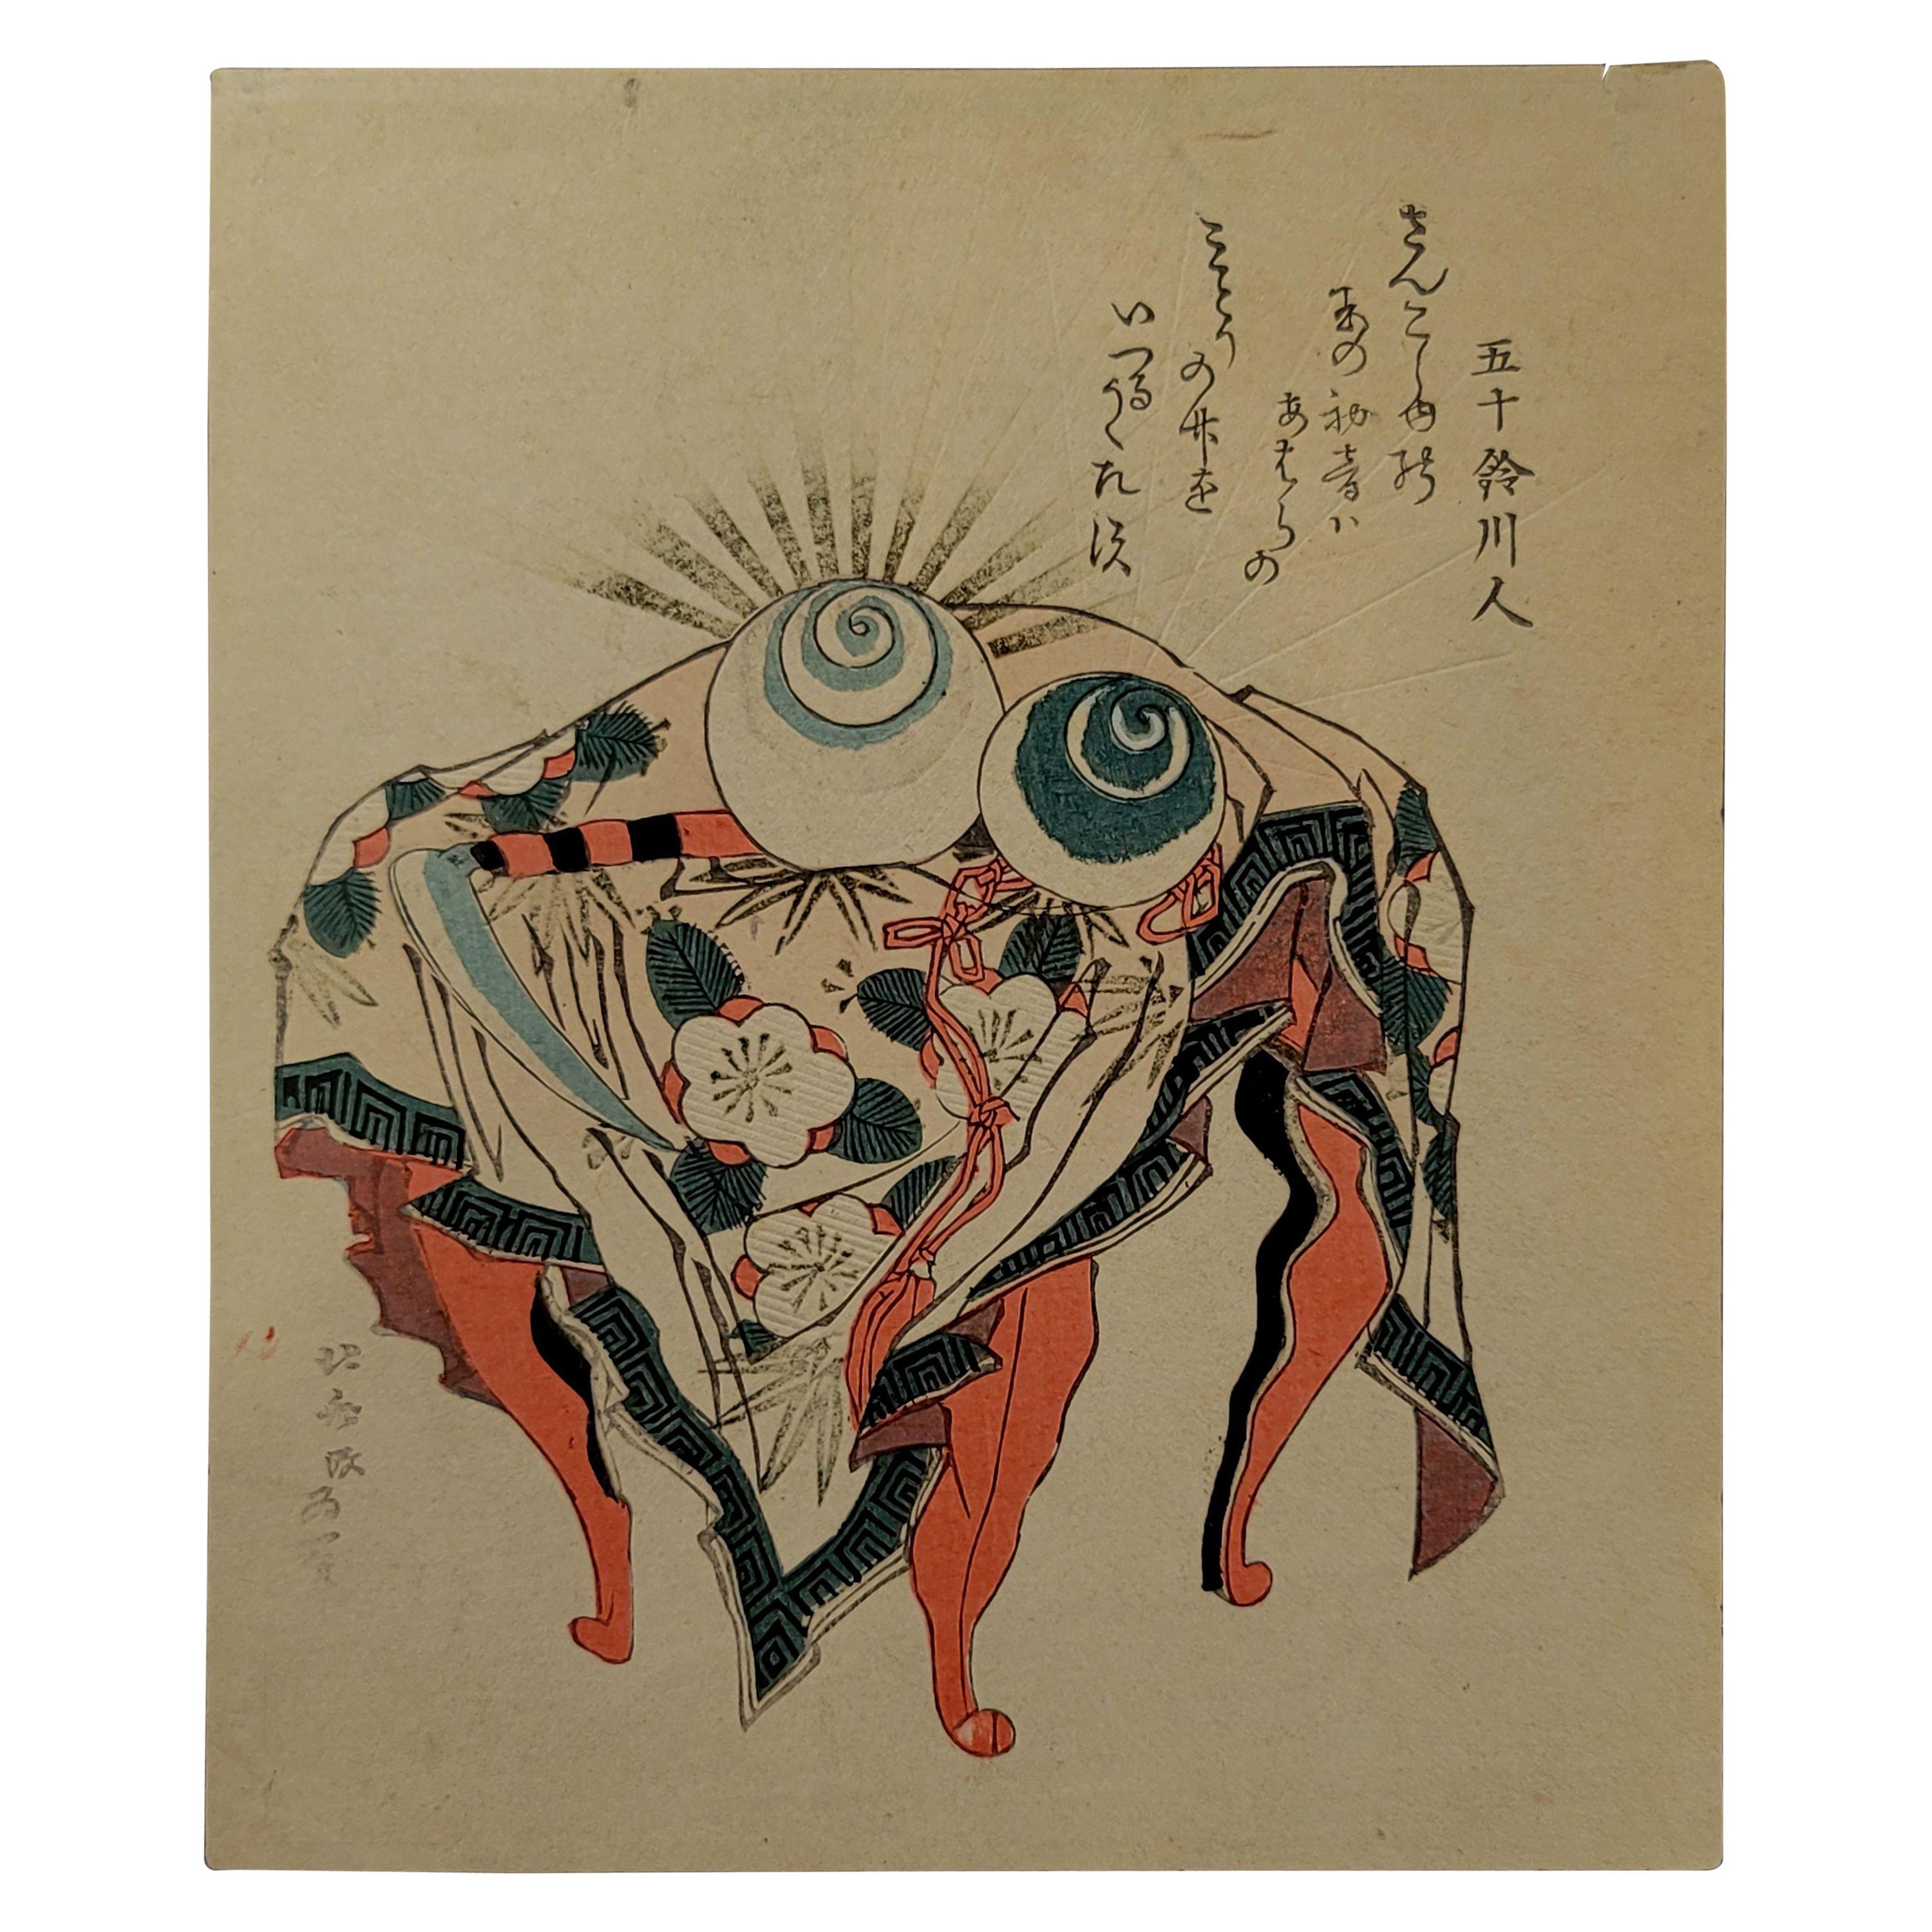 Japanese Woodblock Print by Hokusai Katsushika, 葛飾北齋 (1760~1849)